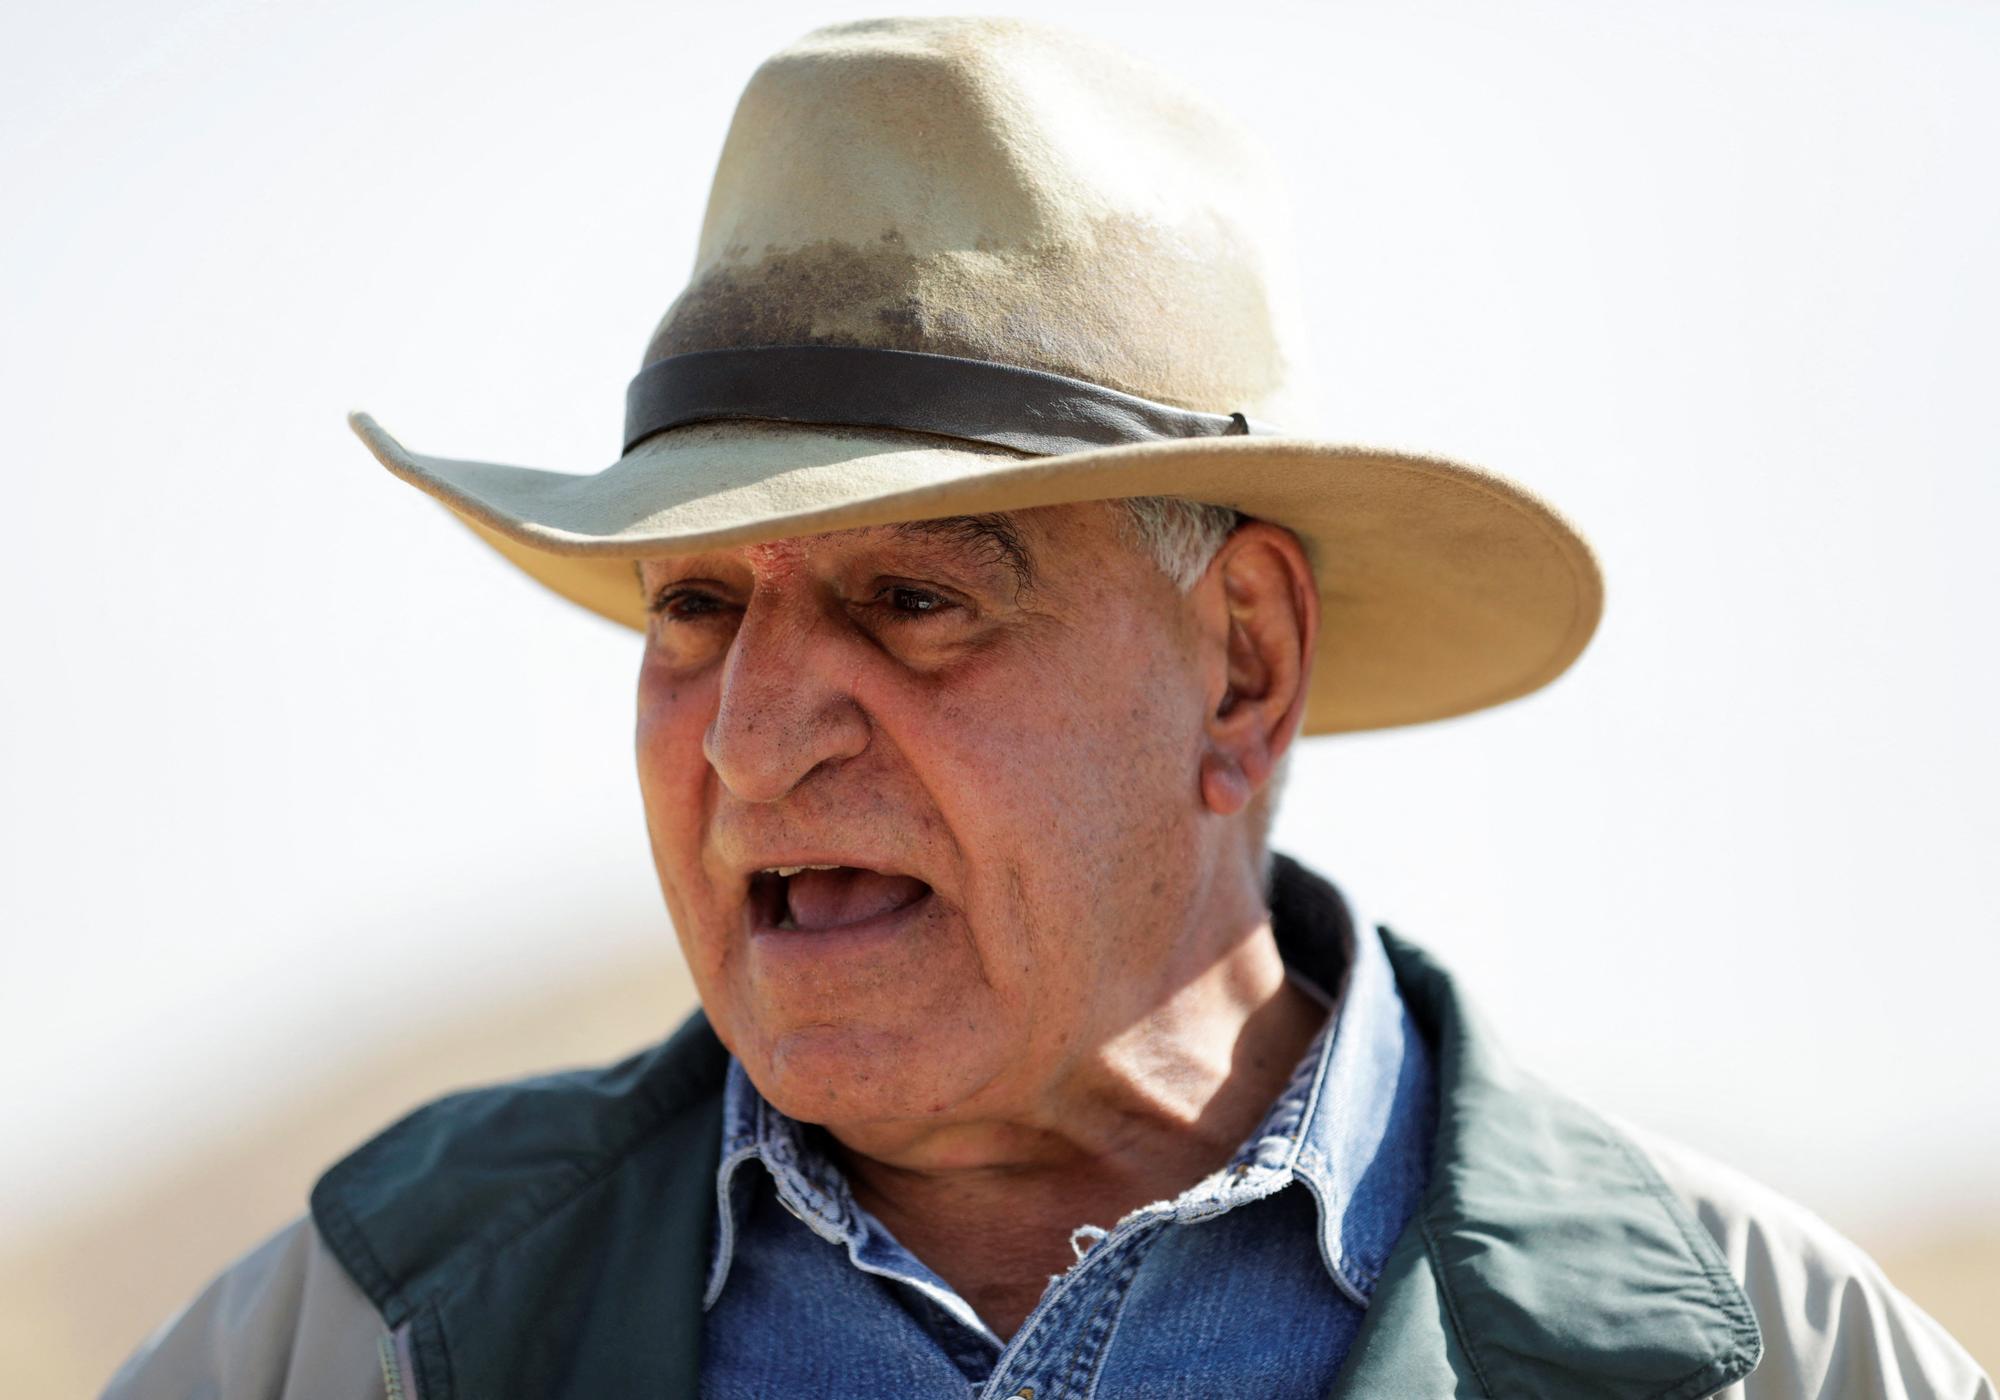 Avec son emblématique chapeau, l'archéologue Zahi Hawass a des airs d'Indiana Jones. [REUTERS - Mohamed Abd El Ghany]